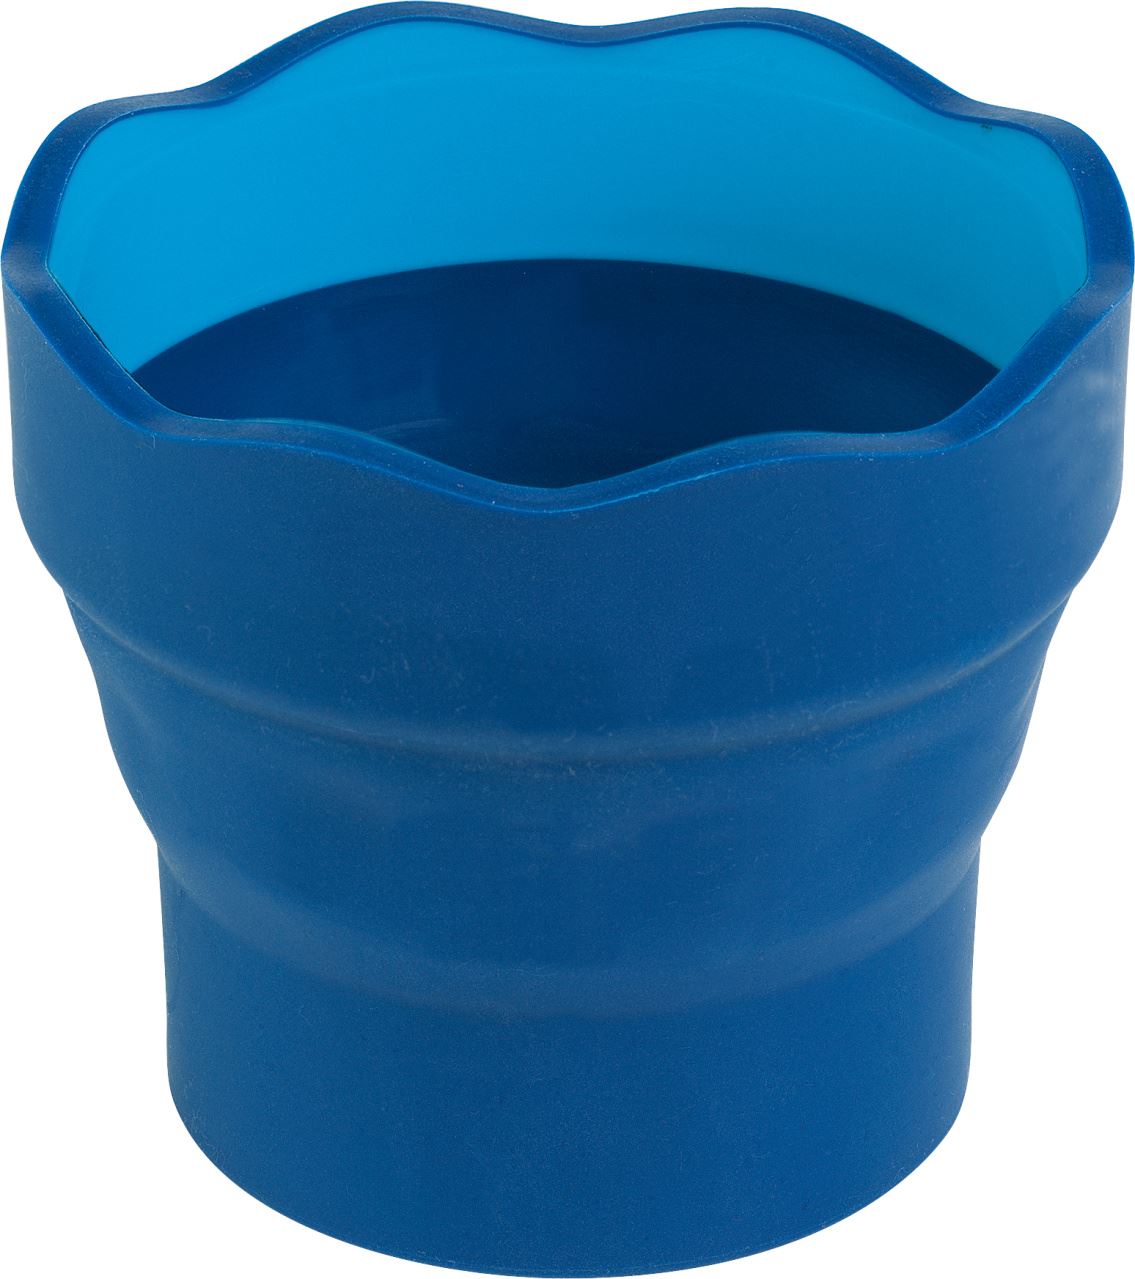 Vaso para el agua Clic & Go plegable fácil de guardar Pincel con cerdas de hilo sintético y depósito de agua de 6 ml Faber-Castell Faber Castell 185105 color verde y oro